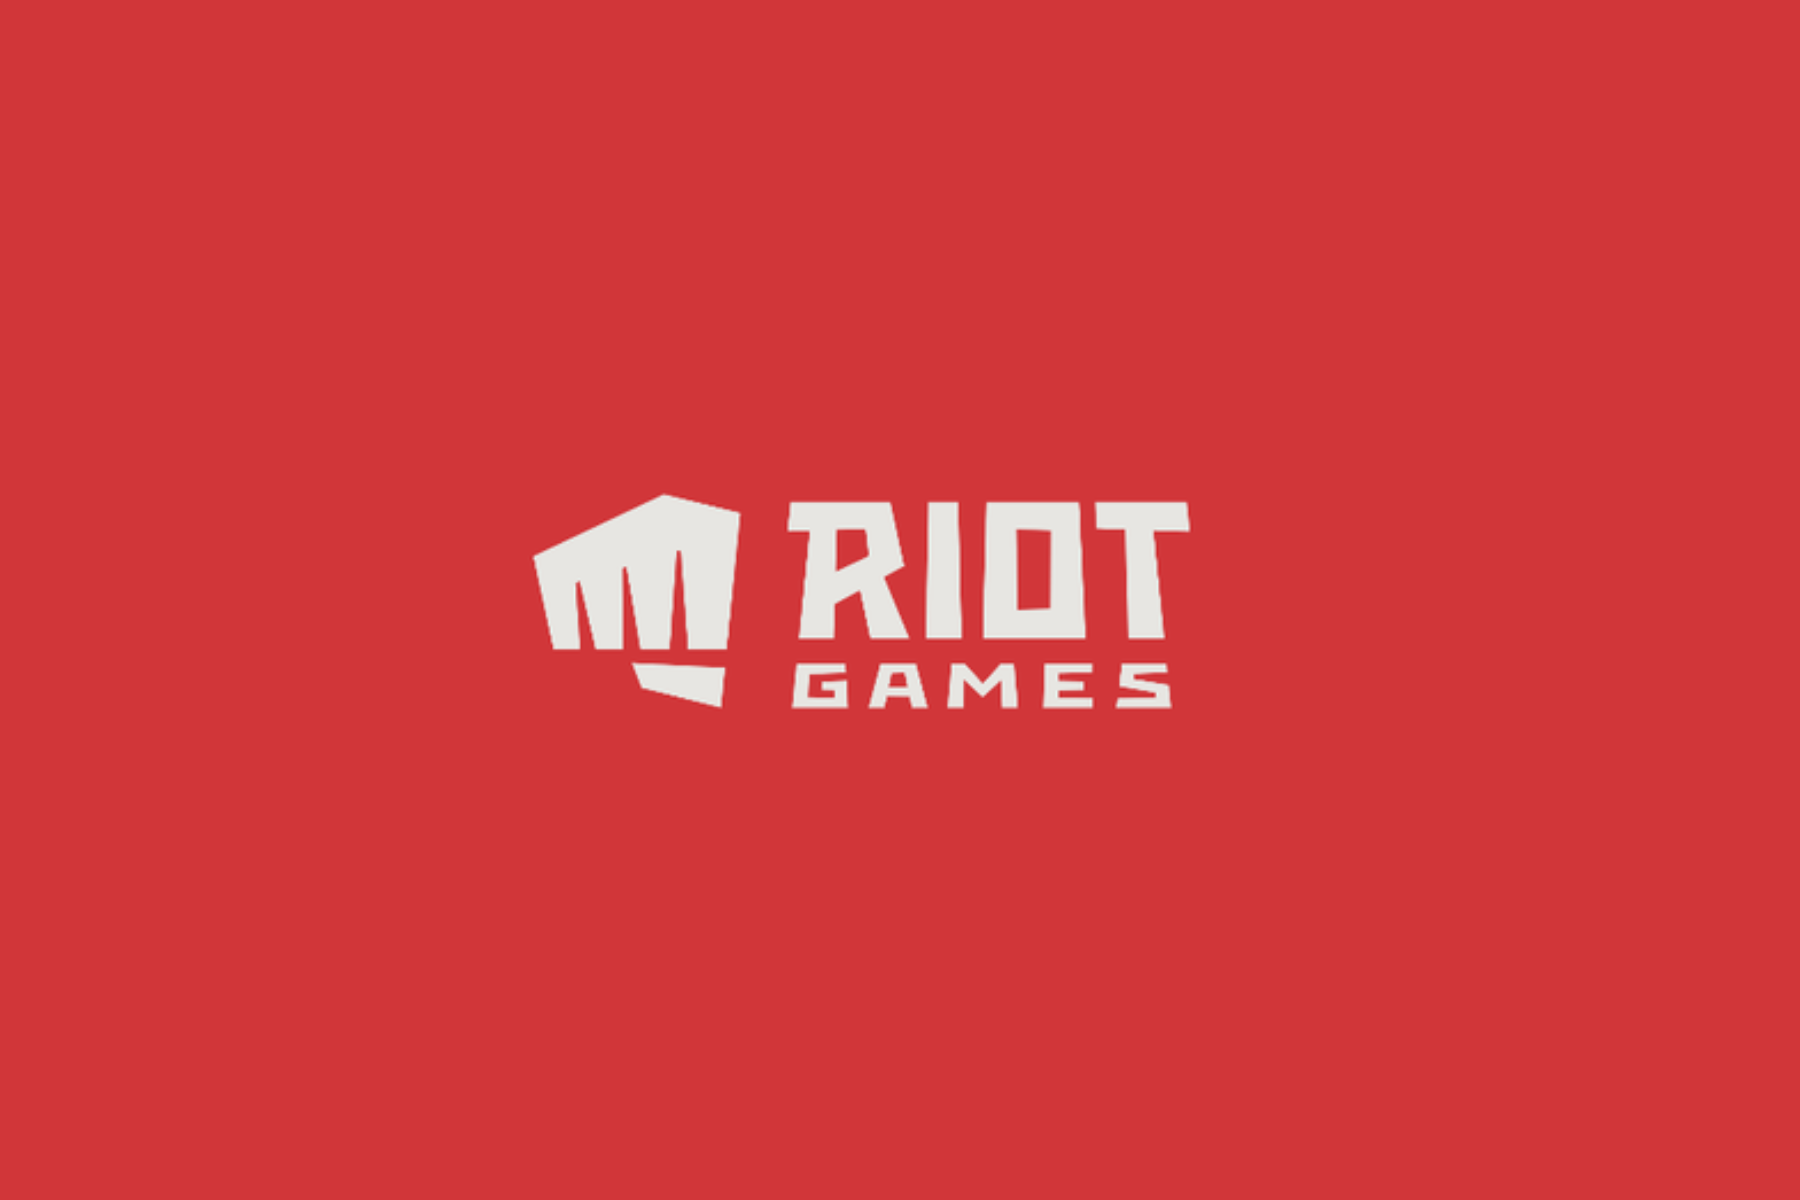 Riot Games và 2 nhà đồng sáng lập quyên góp 35,3 tỉ đồng hỗ trợ ...